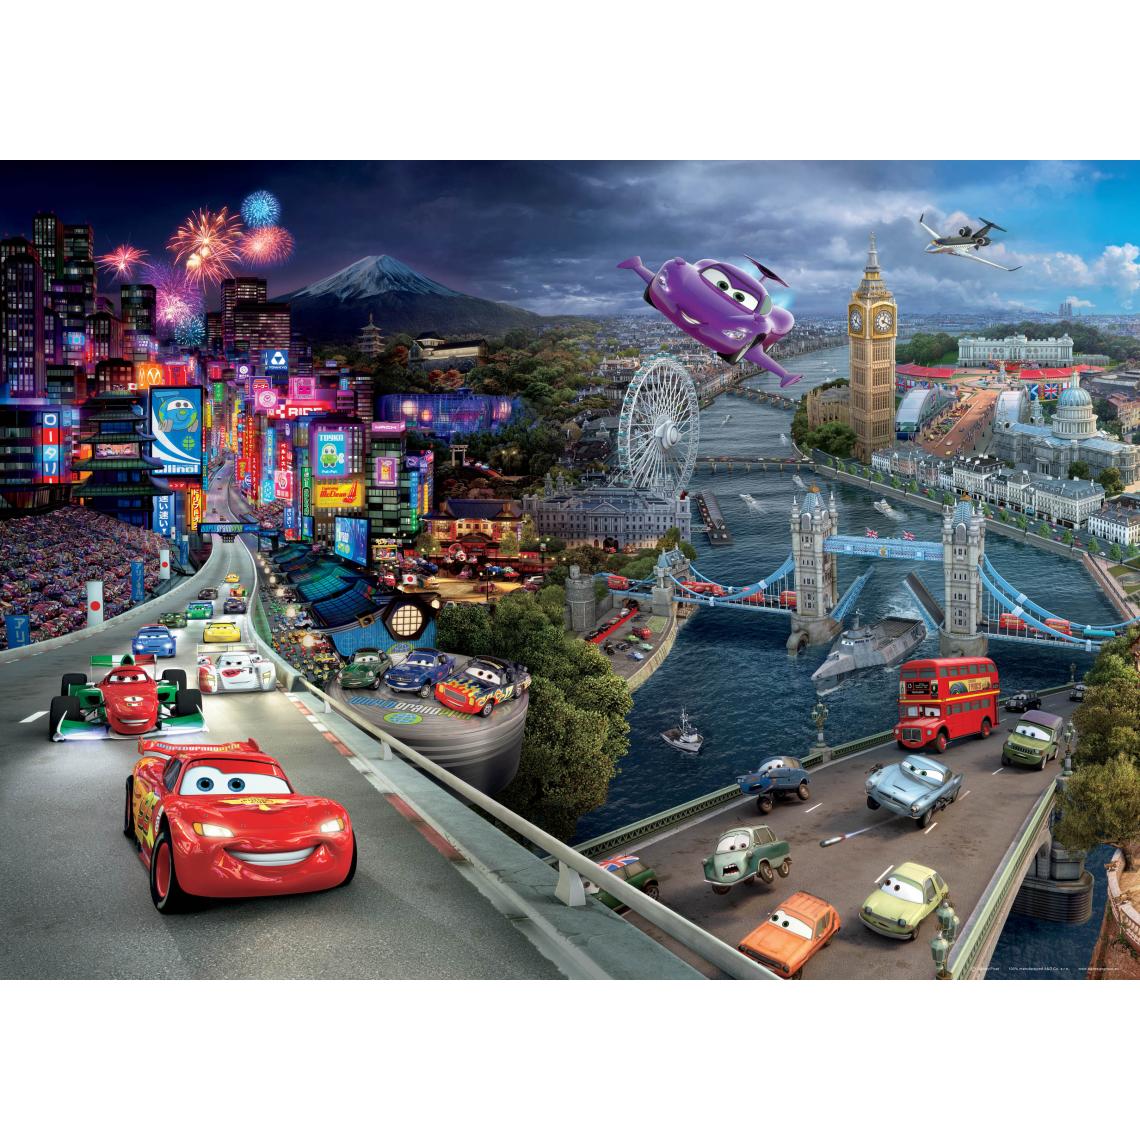 Disney Montres - Disney affiche Cars bleu, rouge et violet - 600649 - 160 x 110 cm - Papier peint